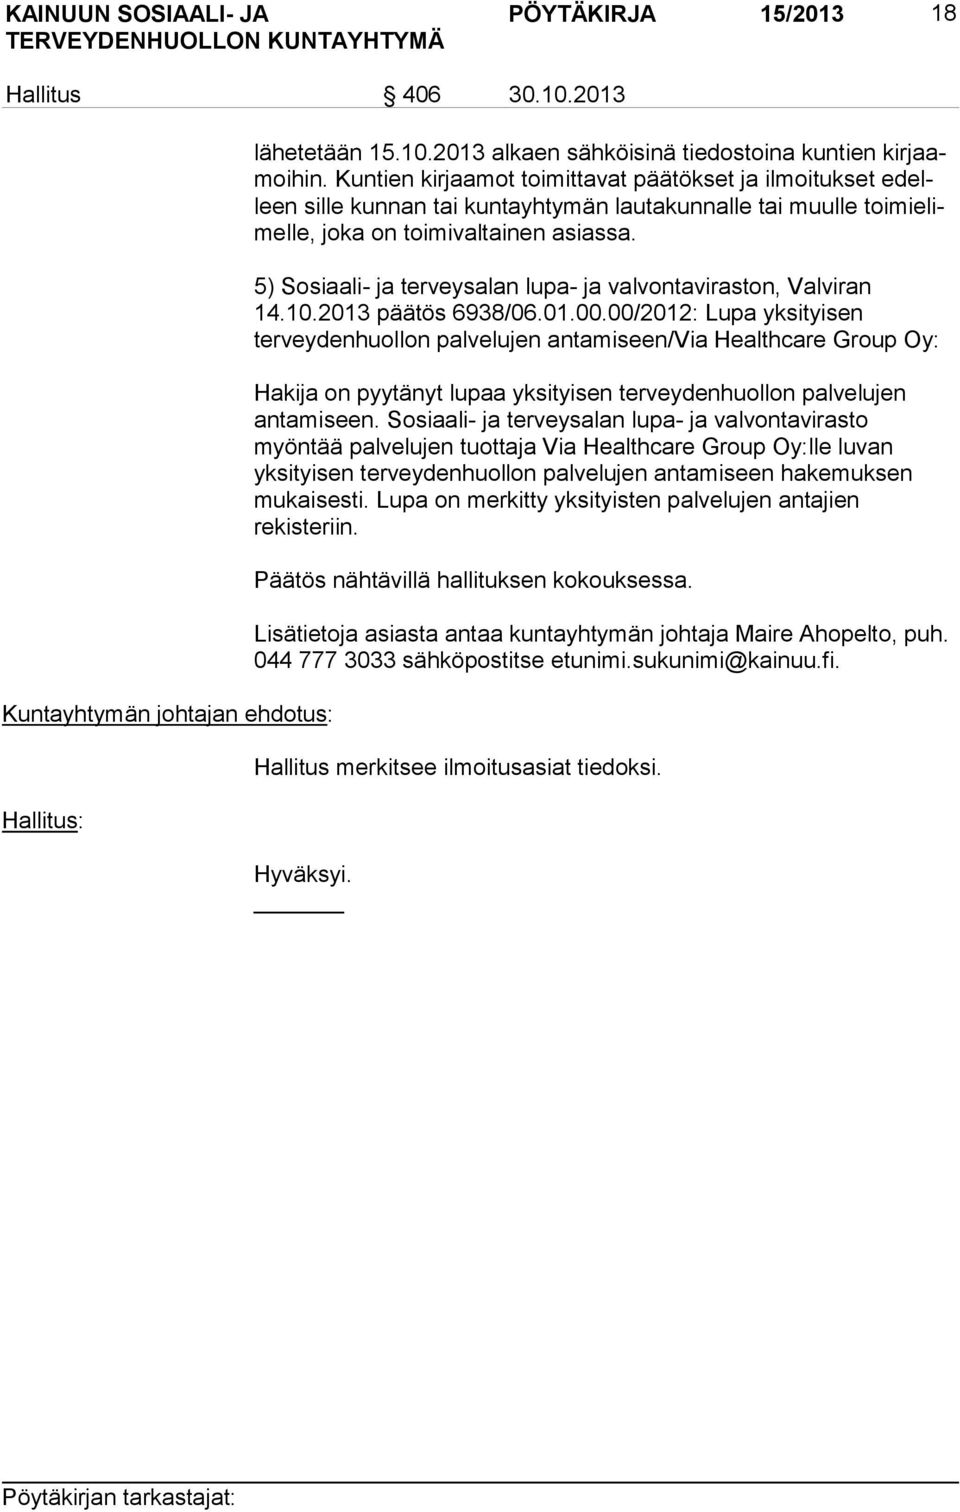 5) Sosiaali- ja terveysalan lupa- ja valvontaviraston, Valviran 14.10.2013 päätös 6938/06.01.00.